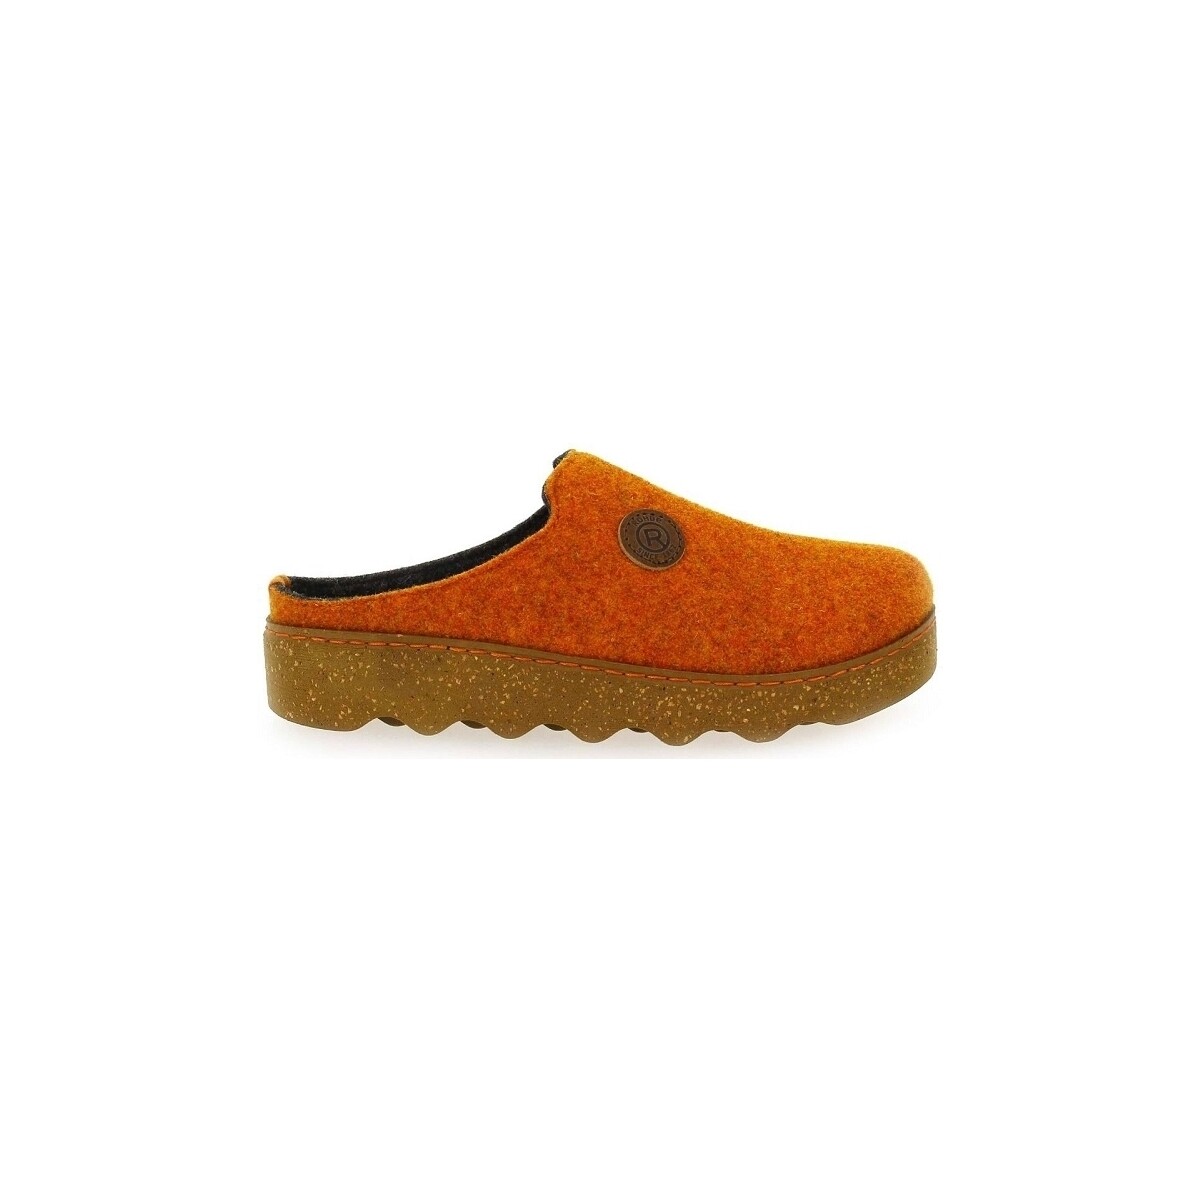 Cipők Női Mamuszok Rohde 6120 Narancssárga